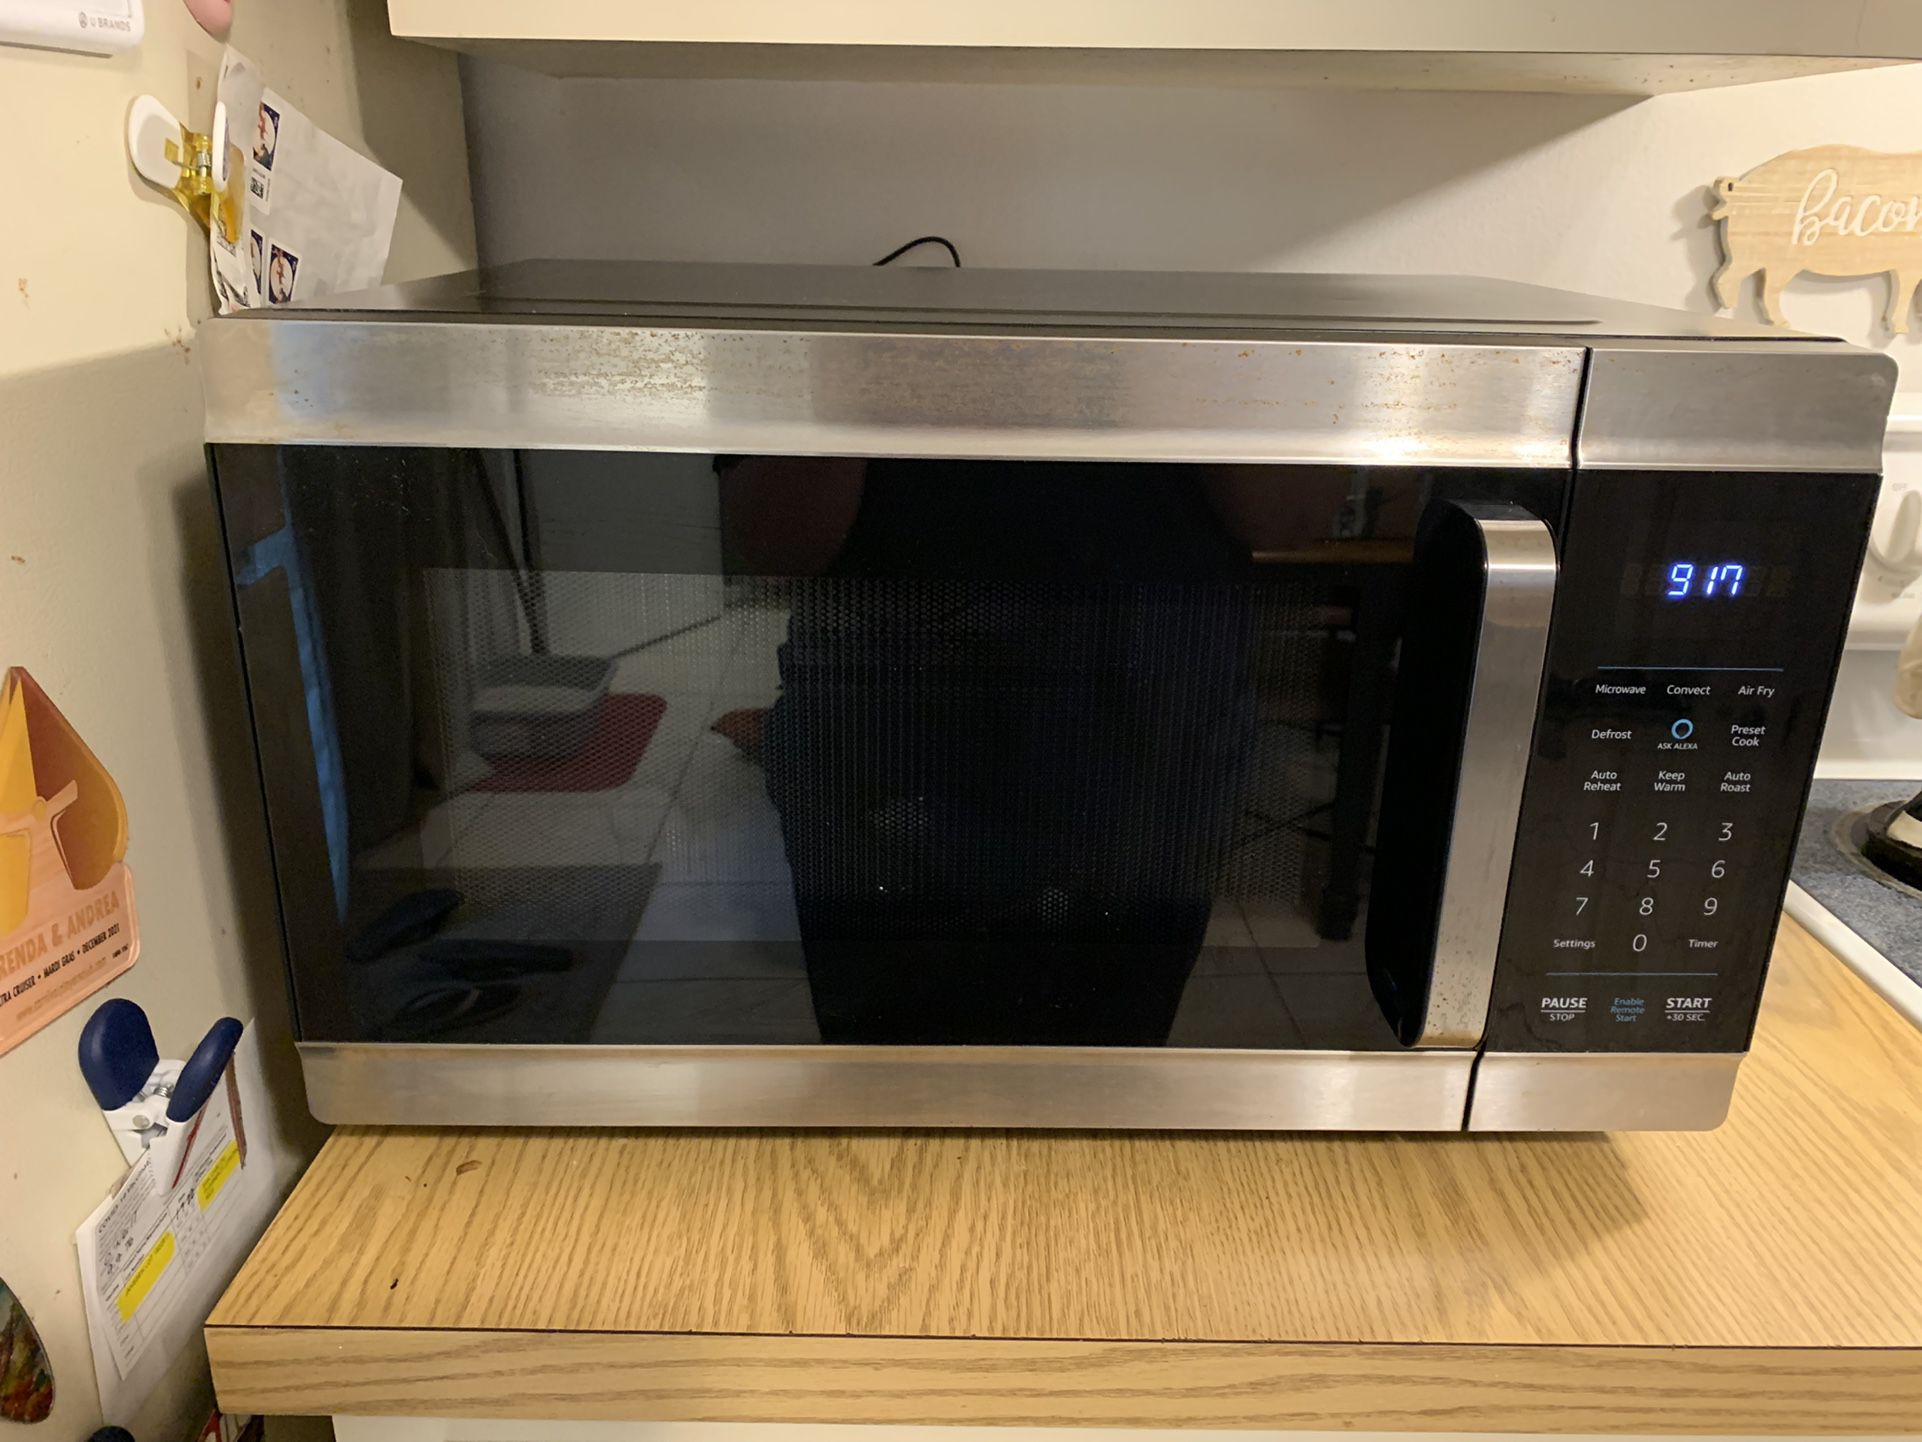 Amazon Smart Oven 